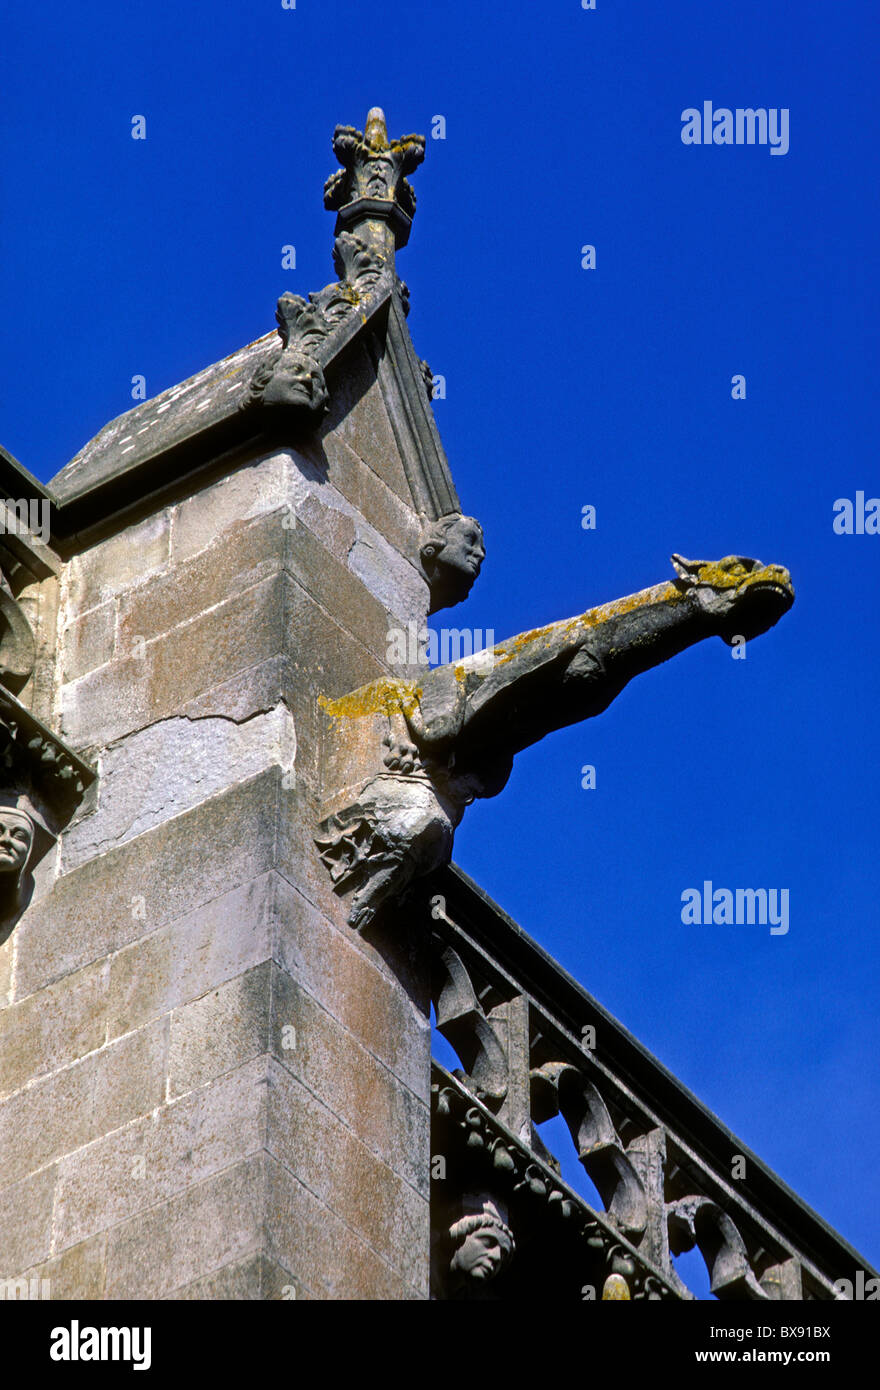 gargoyle, Basilique des Saints Nazaire et Celse, Saint Nazaire and Saint Celse Basilica, La Cite, town of Carcassonne, Languedoc-Roussillon, France Stock Photo